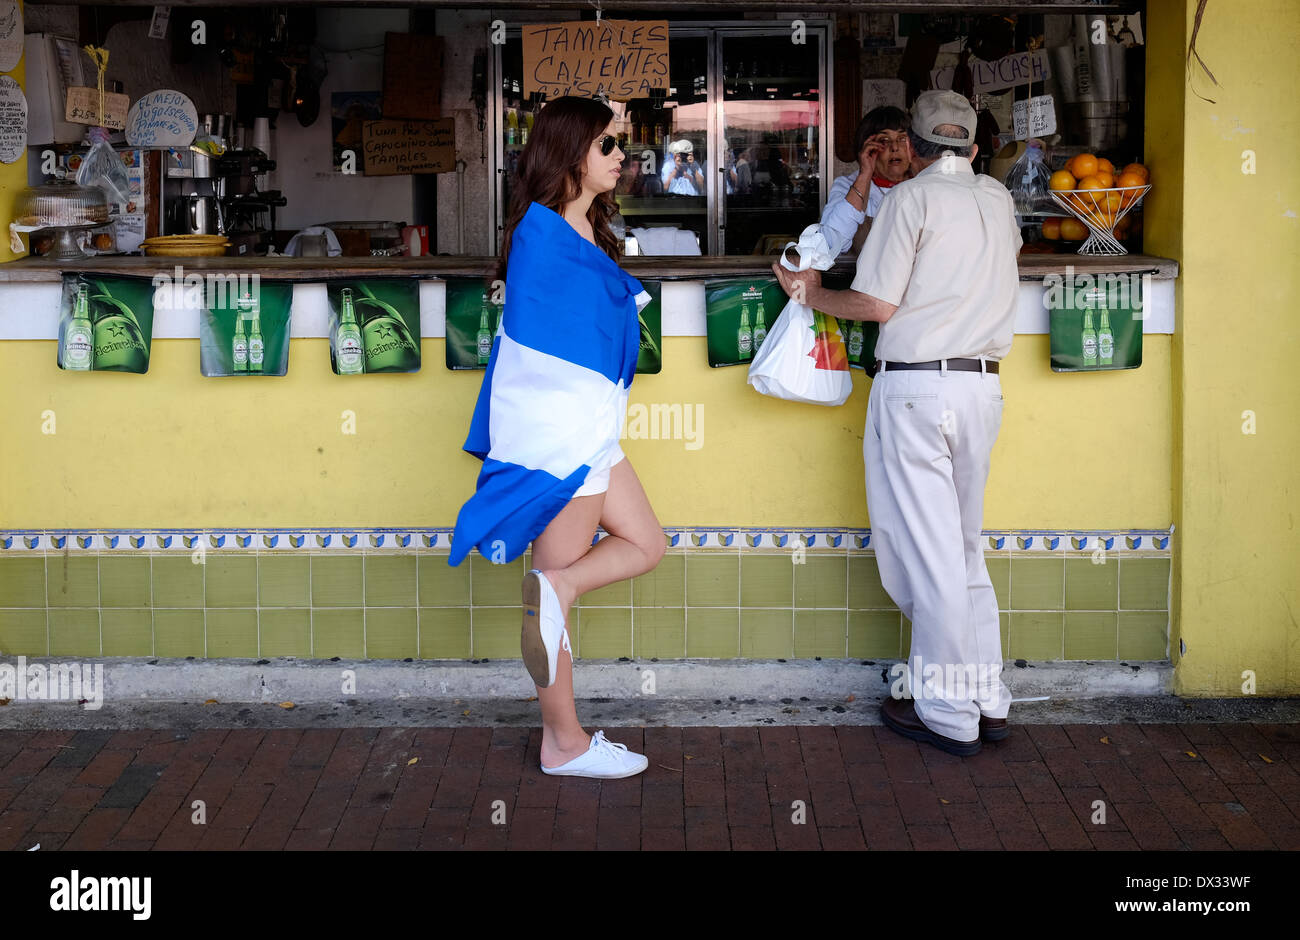 MIAMI - Marzo 9, 2014: la donna che indossa un flag durante la trentasettesima Calle Ocho festival, un evento annuale che si svolge in ottava strada in Little Havana con molta musica, cibo ed è il più grande partito in città che celebra eredità ispanica. Foto Stock